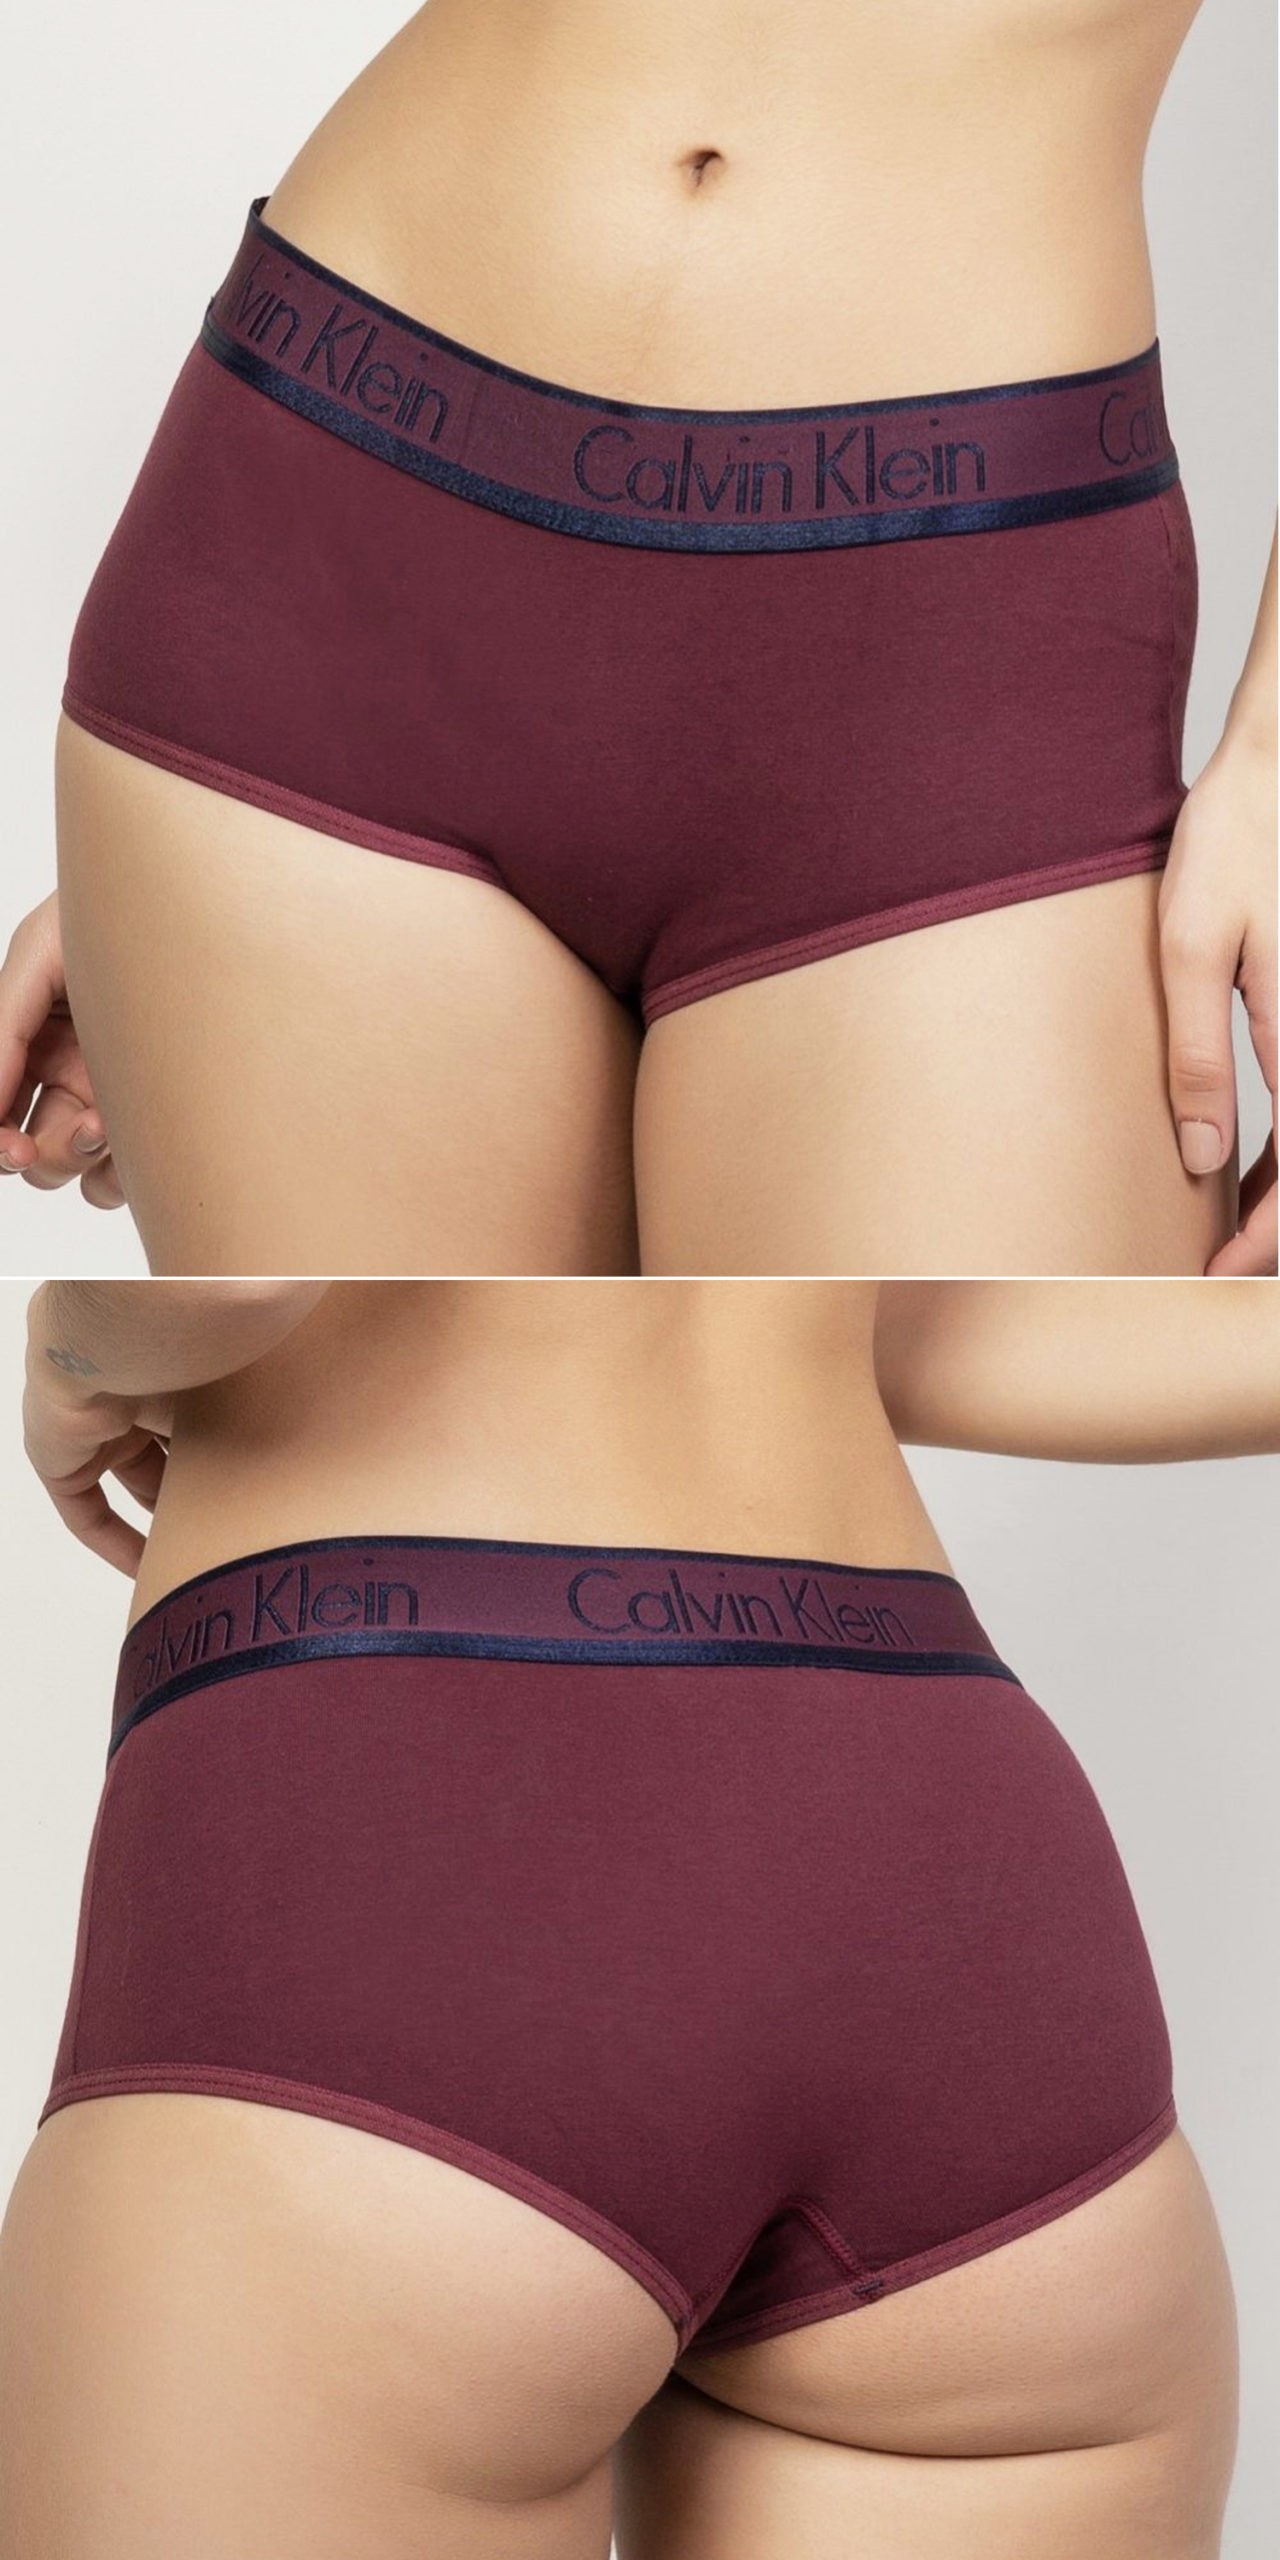 Calcinha Calvin Klein Underwear Boyshort Logo Cinza - Compre Agora